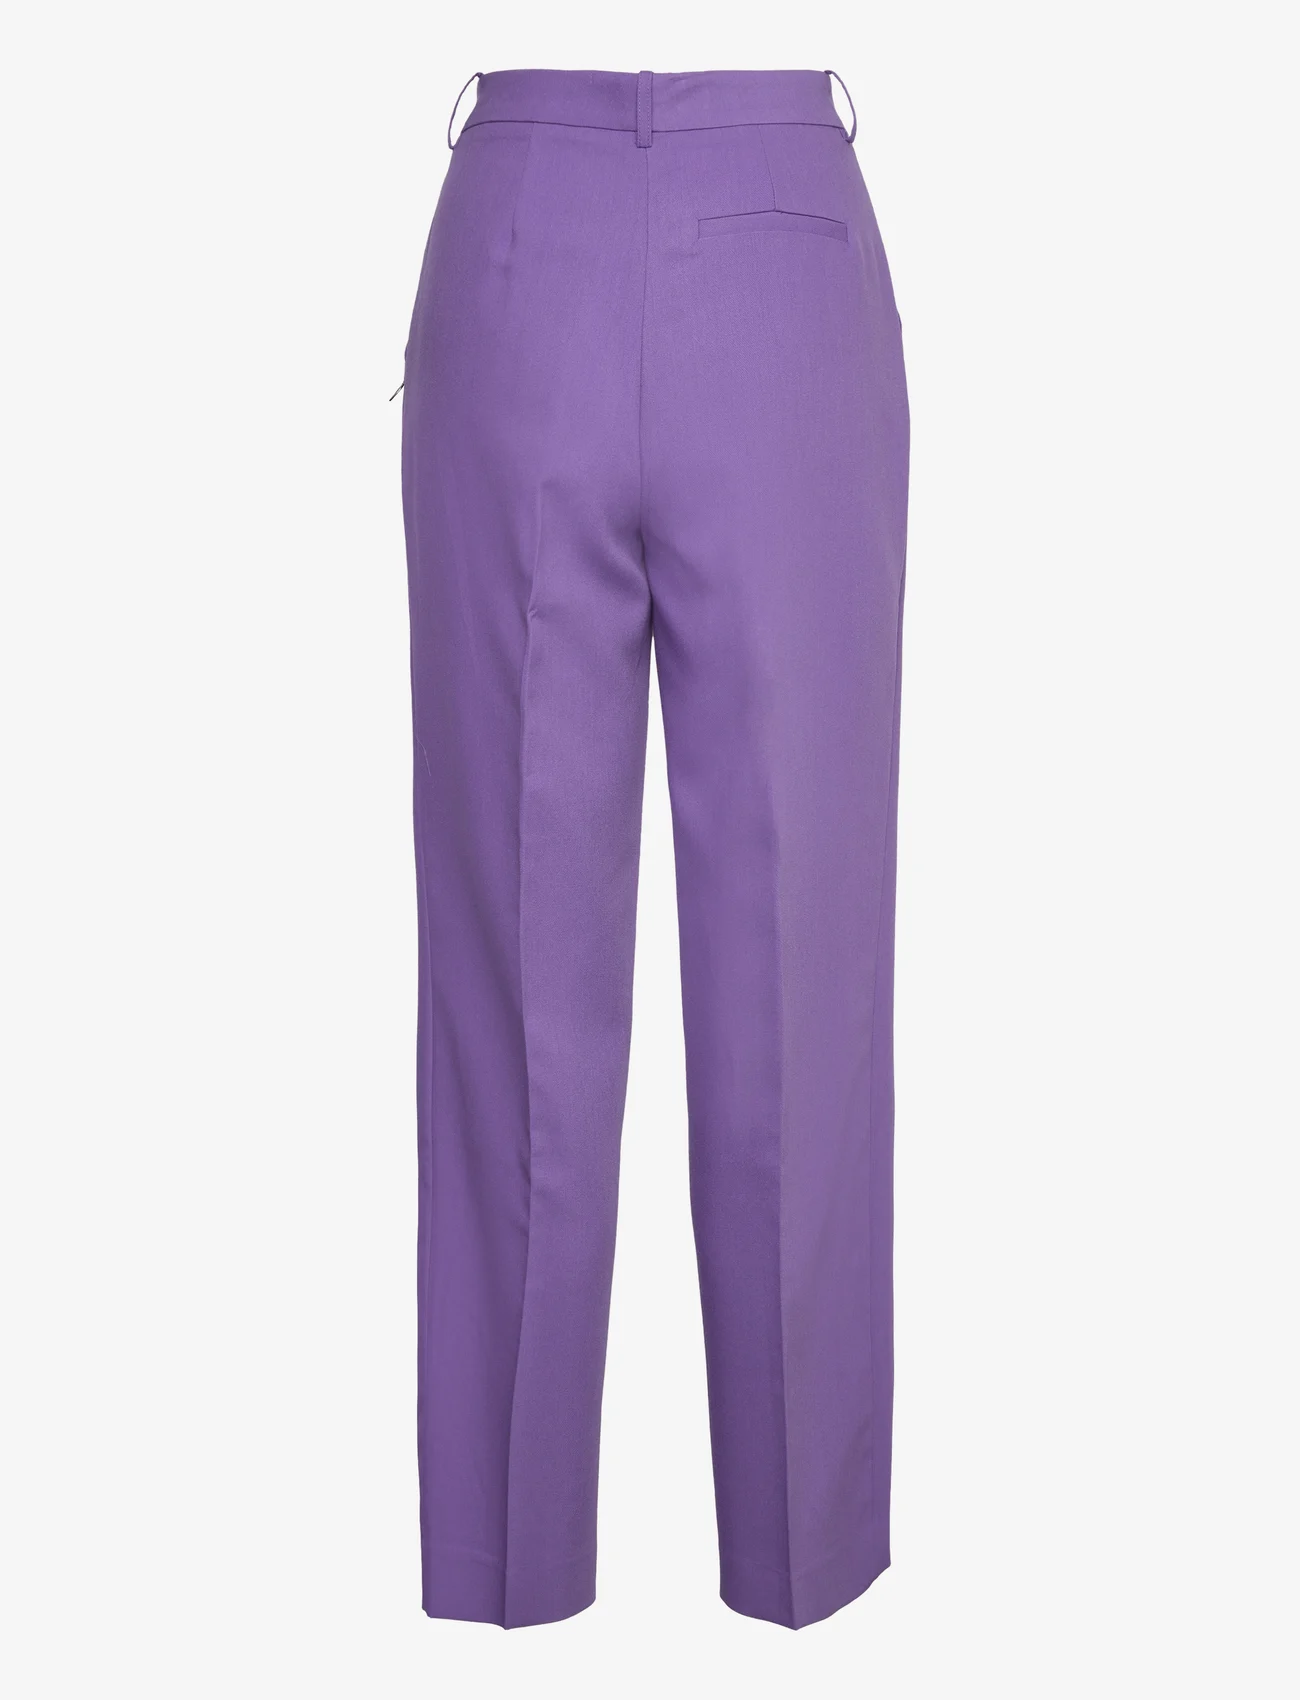 Coster Copenhagen - Pants with wide legs - Petra fit - wide leg trousers - warm purple - 1